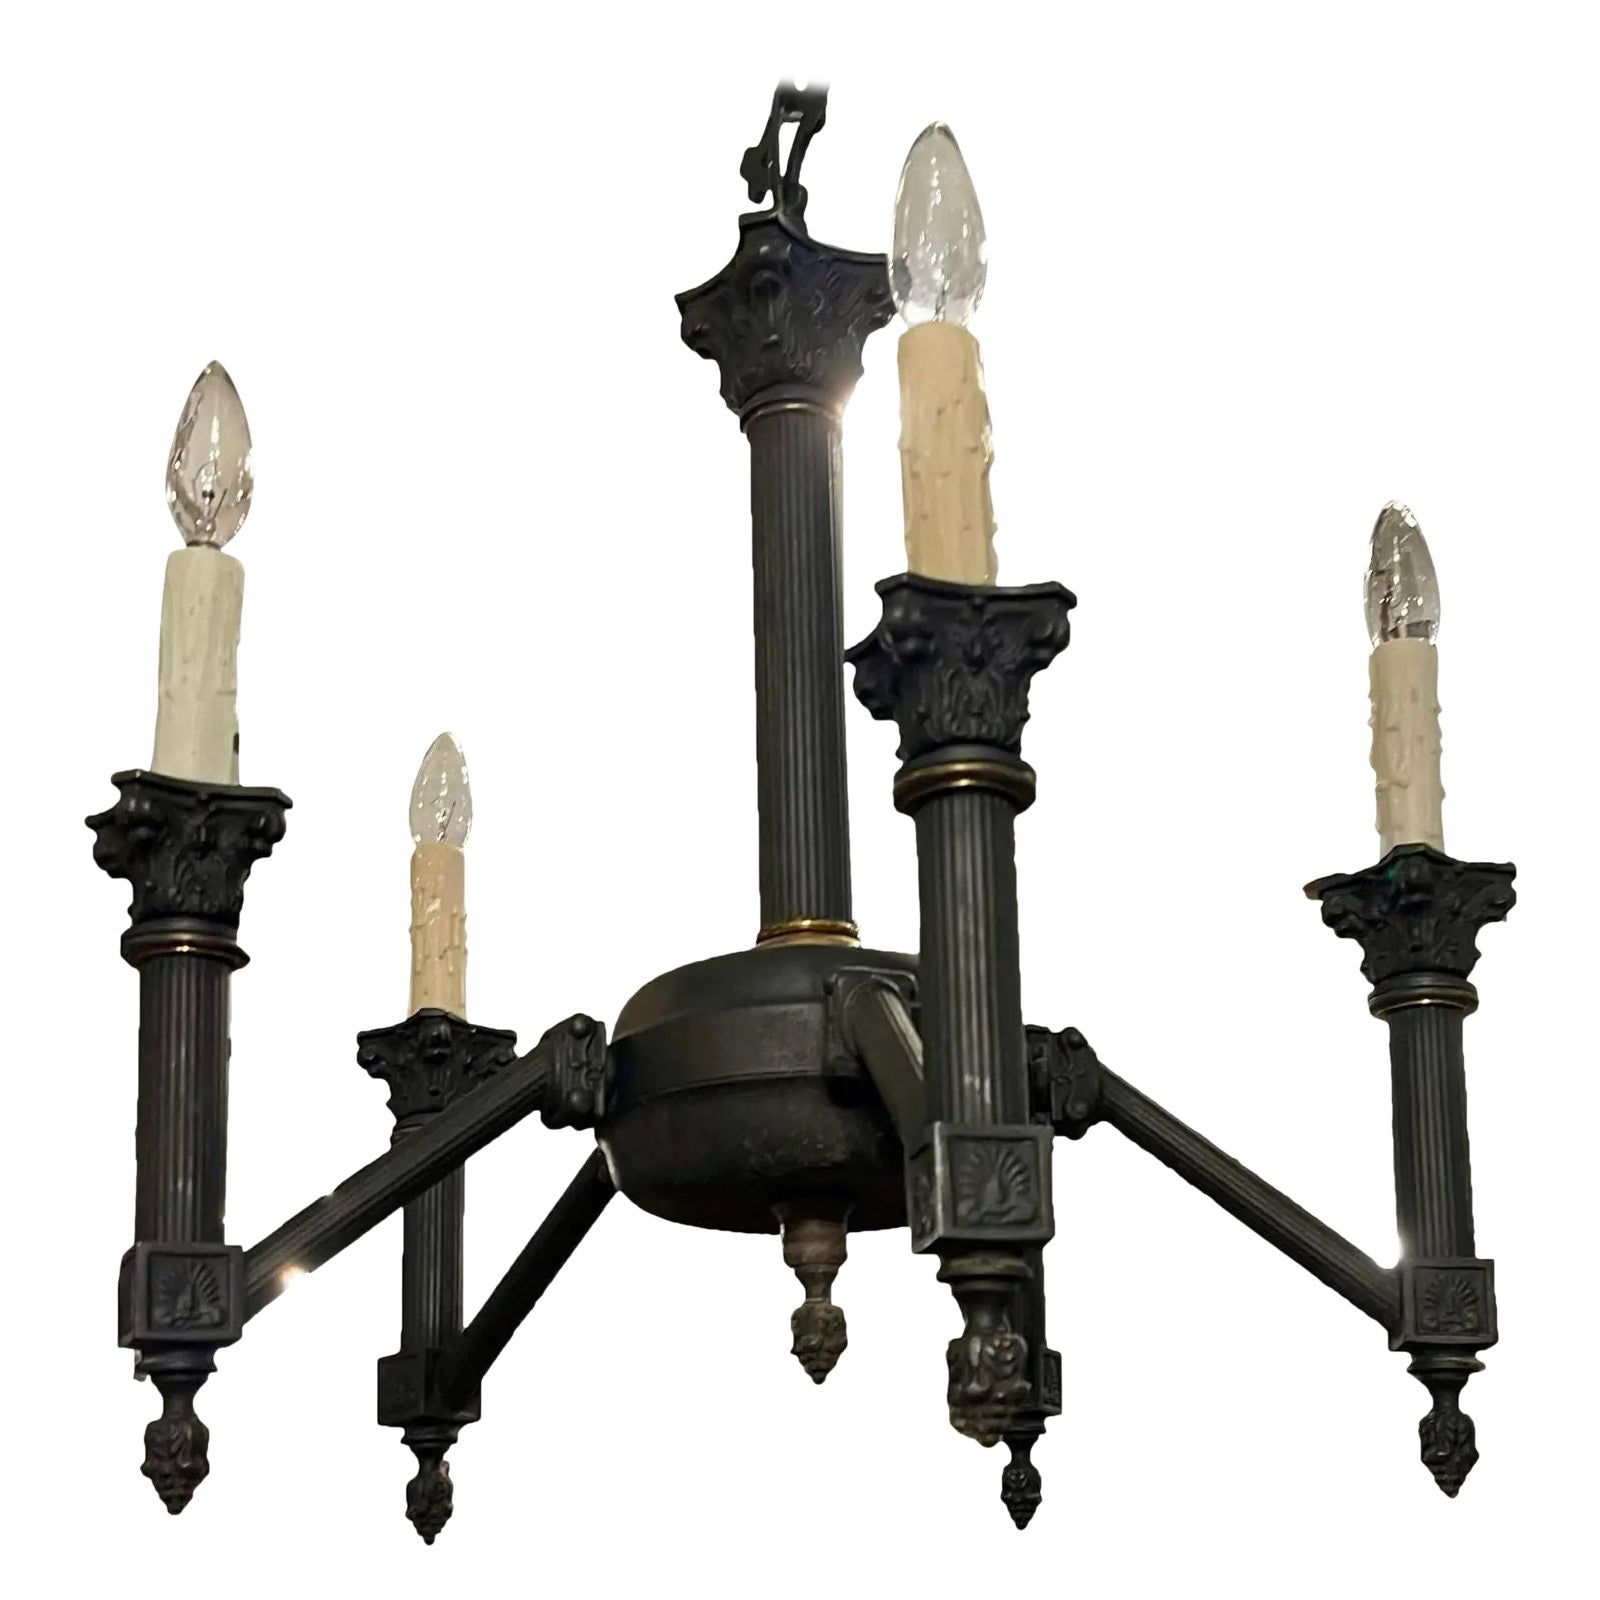 Lustre à six lumières de style Empire à colonnes corinthiennes néoclassiques noires